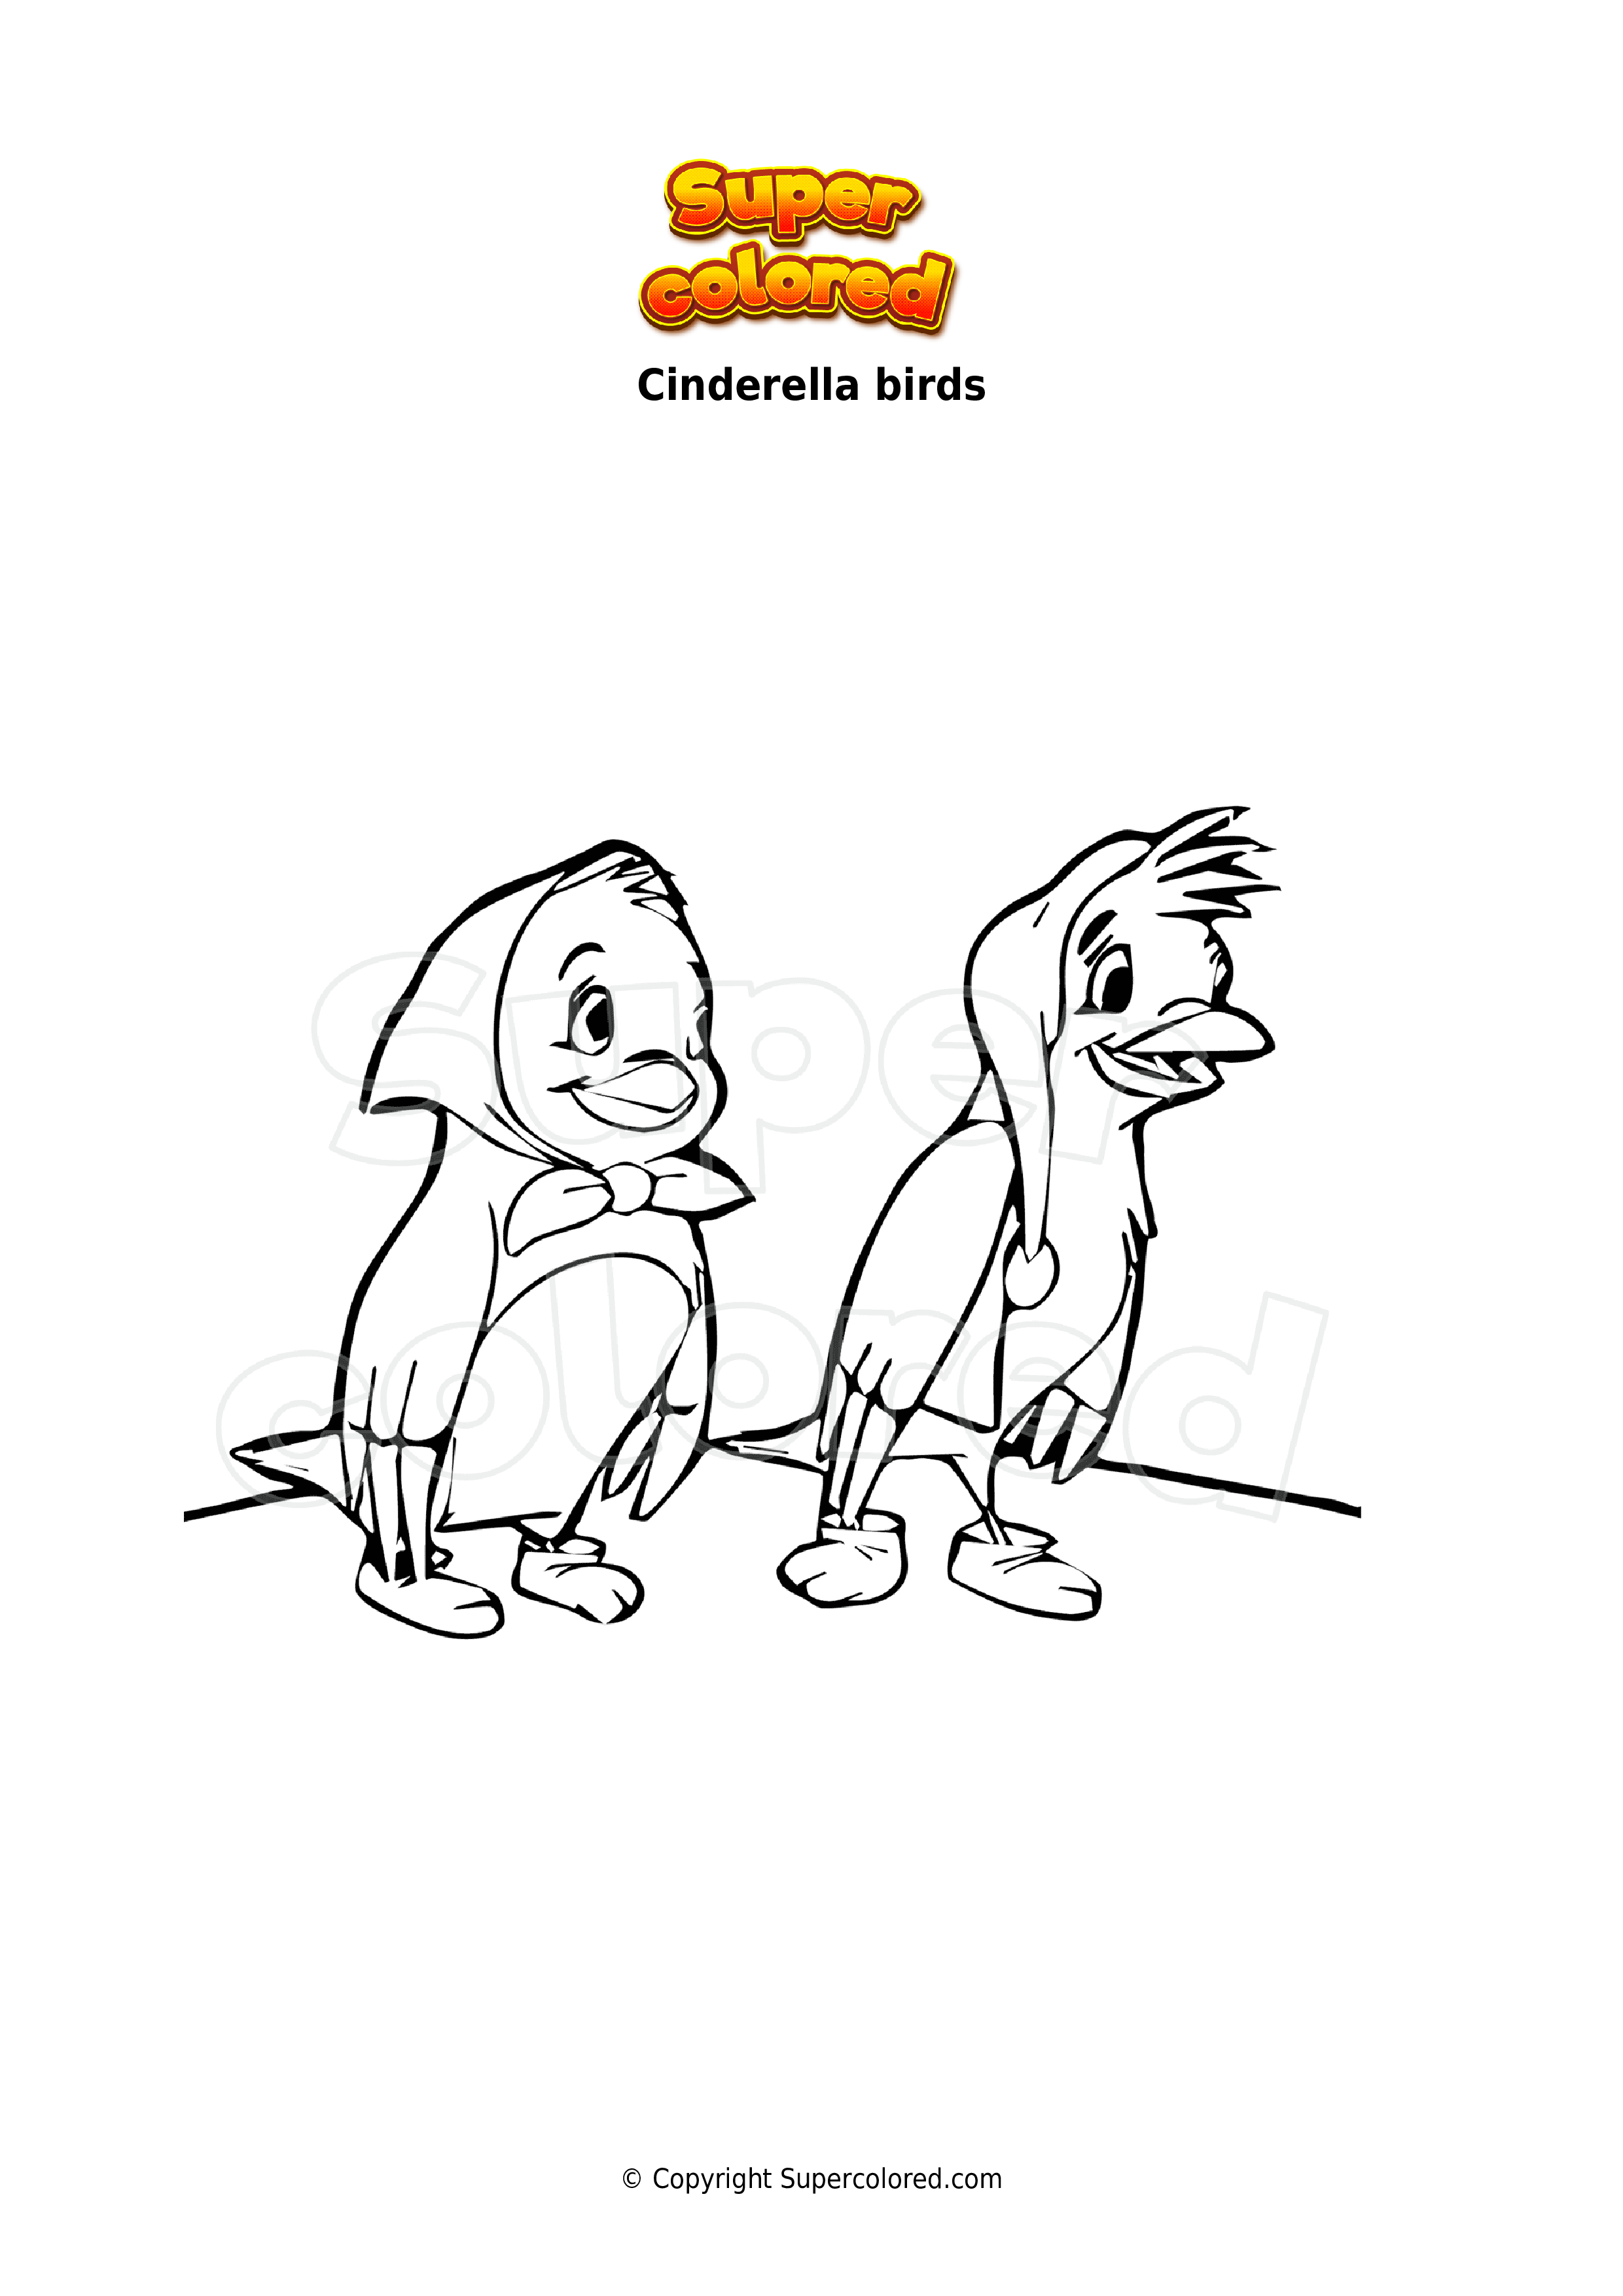 cinderella birds coloring pages